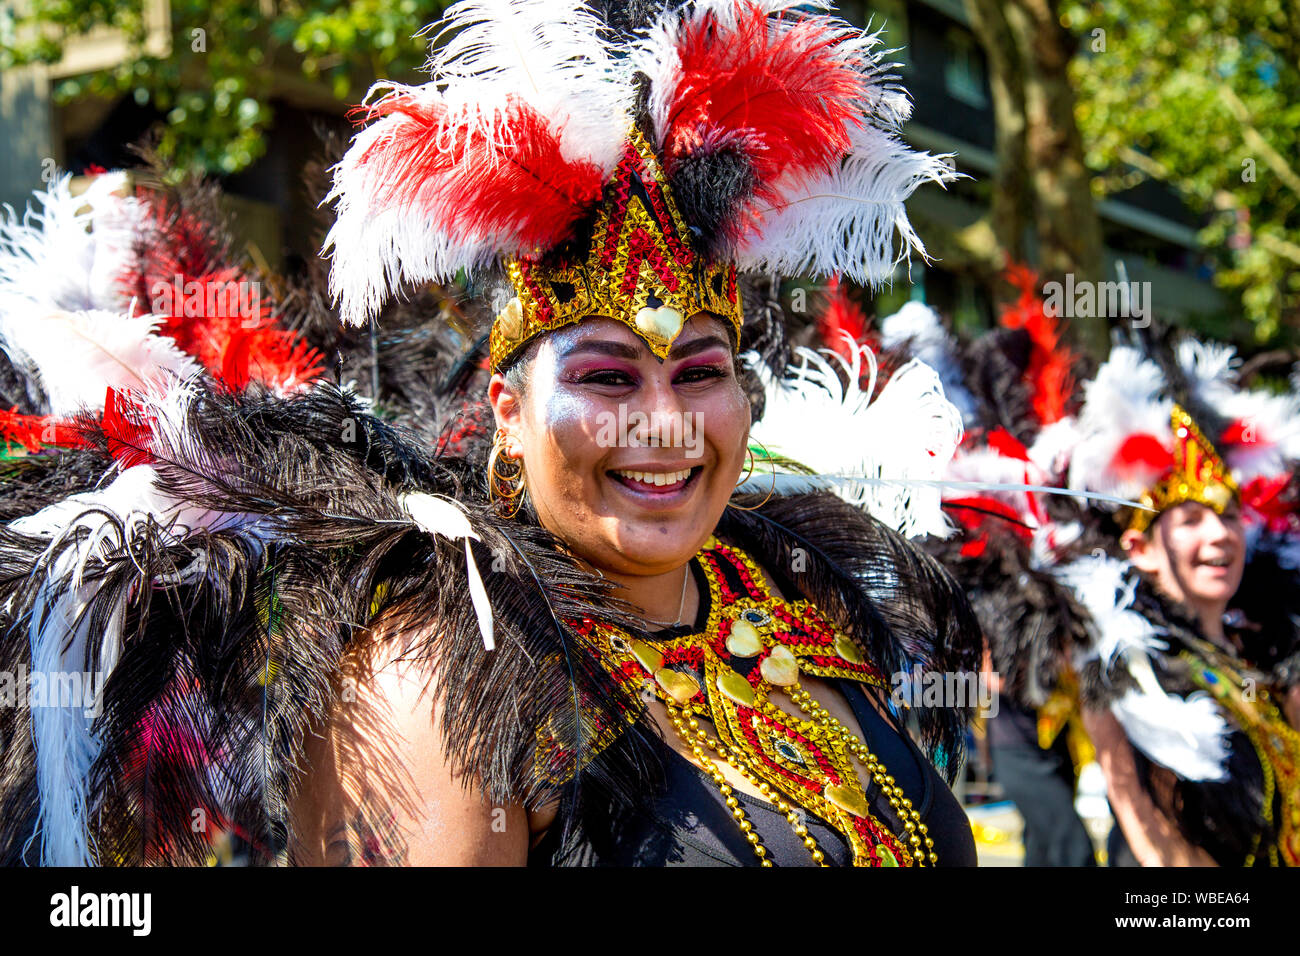 26 août 2019 - Danseuse habillés dans une plume coiffe samba smiling at Notting Hill Carnival sur une maison de banque lundi, Londres, UK Banque D'Images